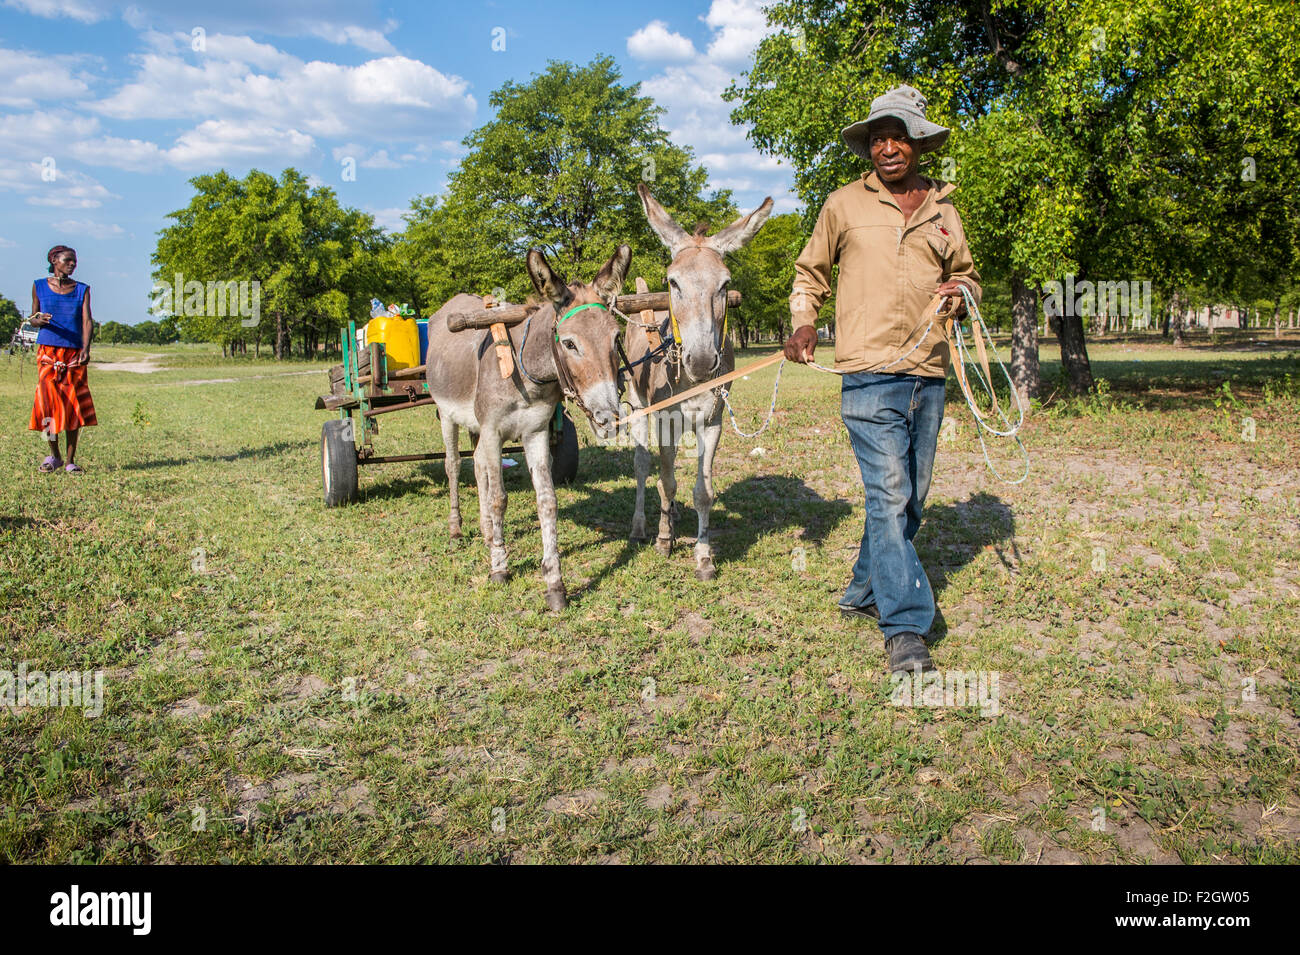 Les Africains avec des ânes tirant une charrette dans une zone rurale au Botswana, l'Afrique Banque D'Images